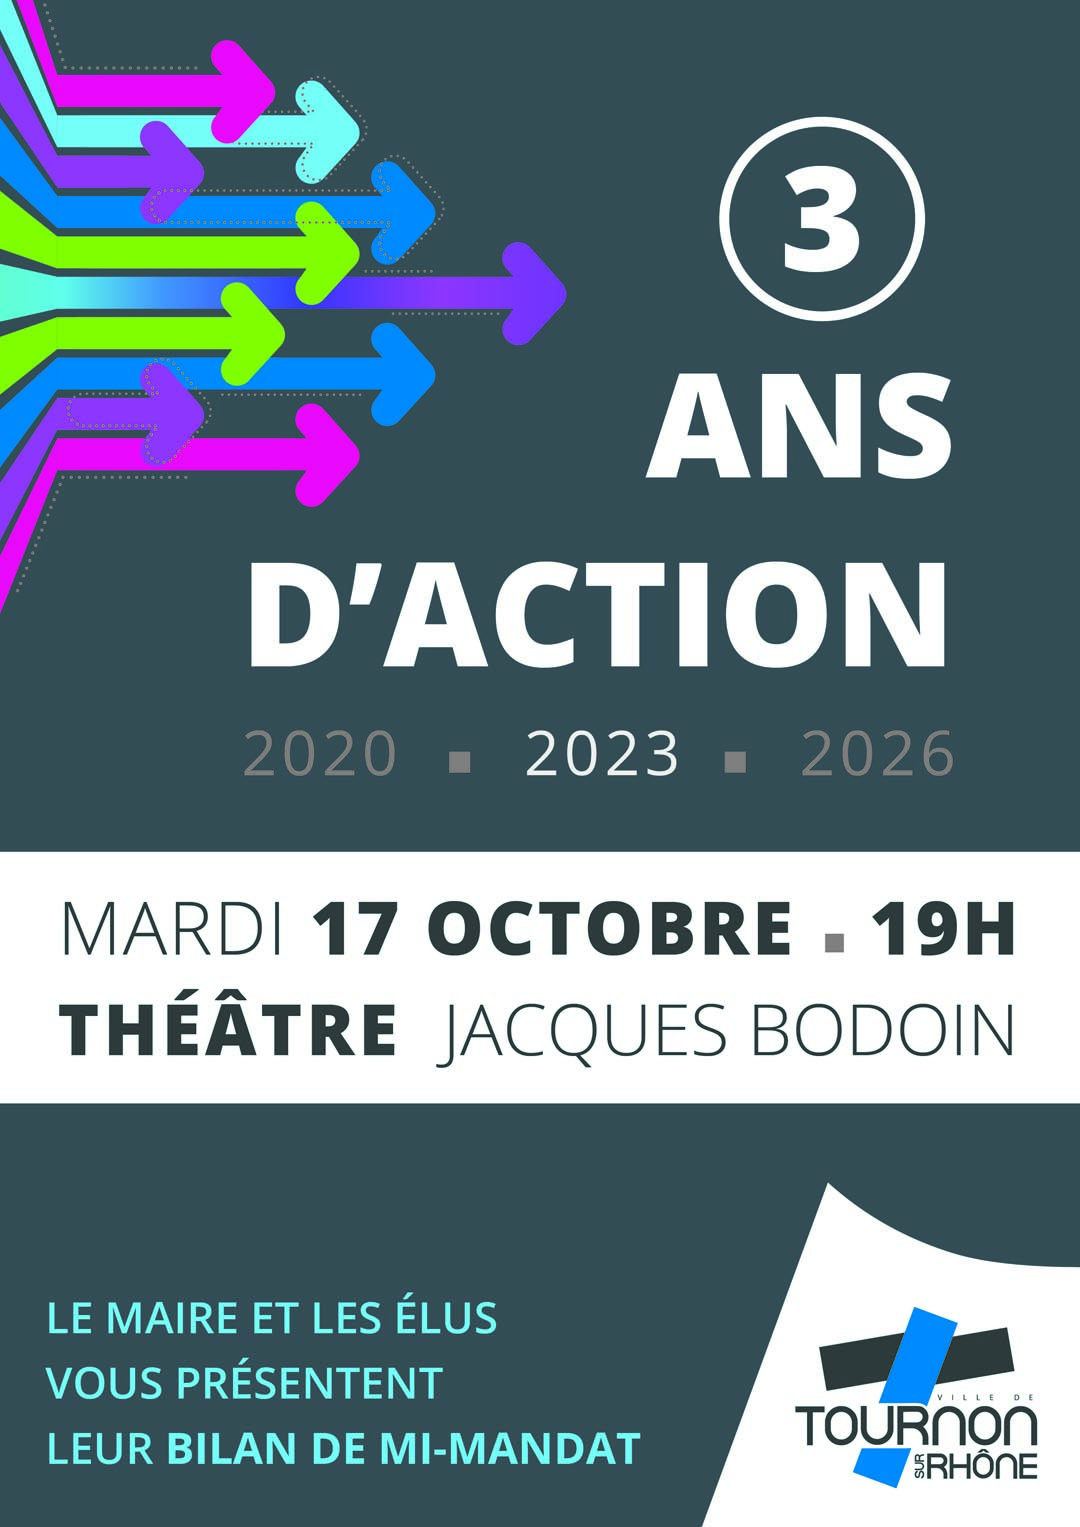 Réunion de présentation du bilan de mi-mandat. Mardi 17 octobre à 19h au Théâtre Jacques Bodoin.